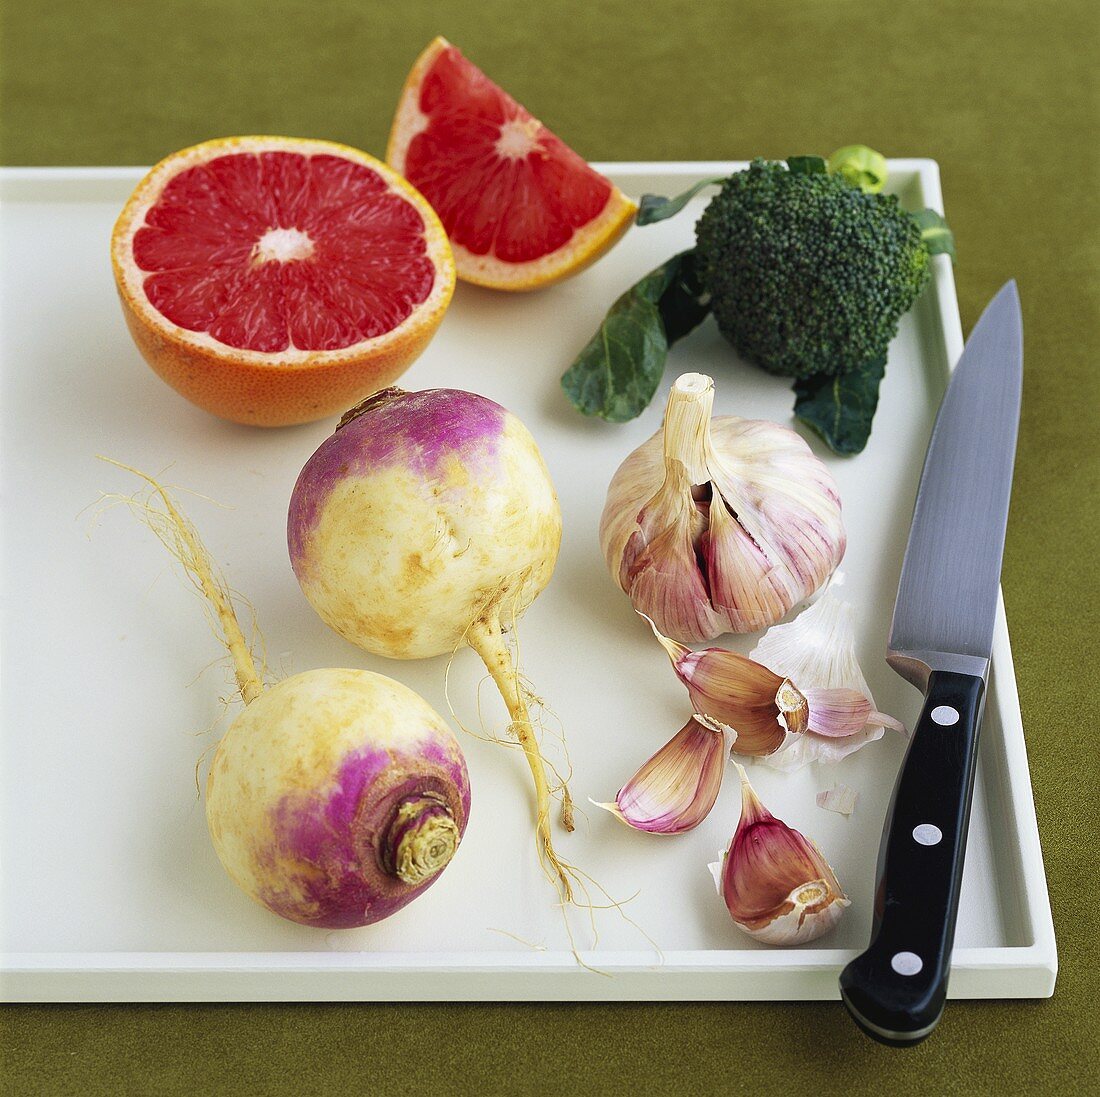 Blood orange, turnip, garlic and broccoli on chopping board